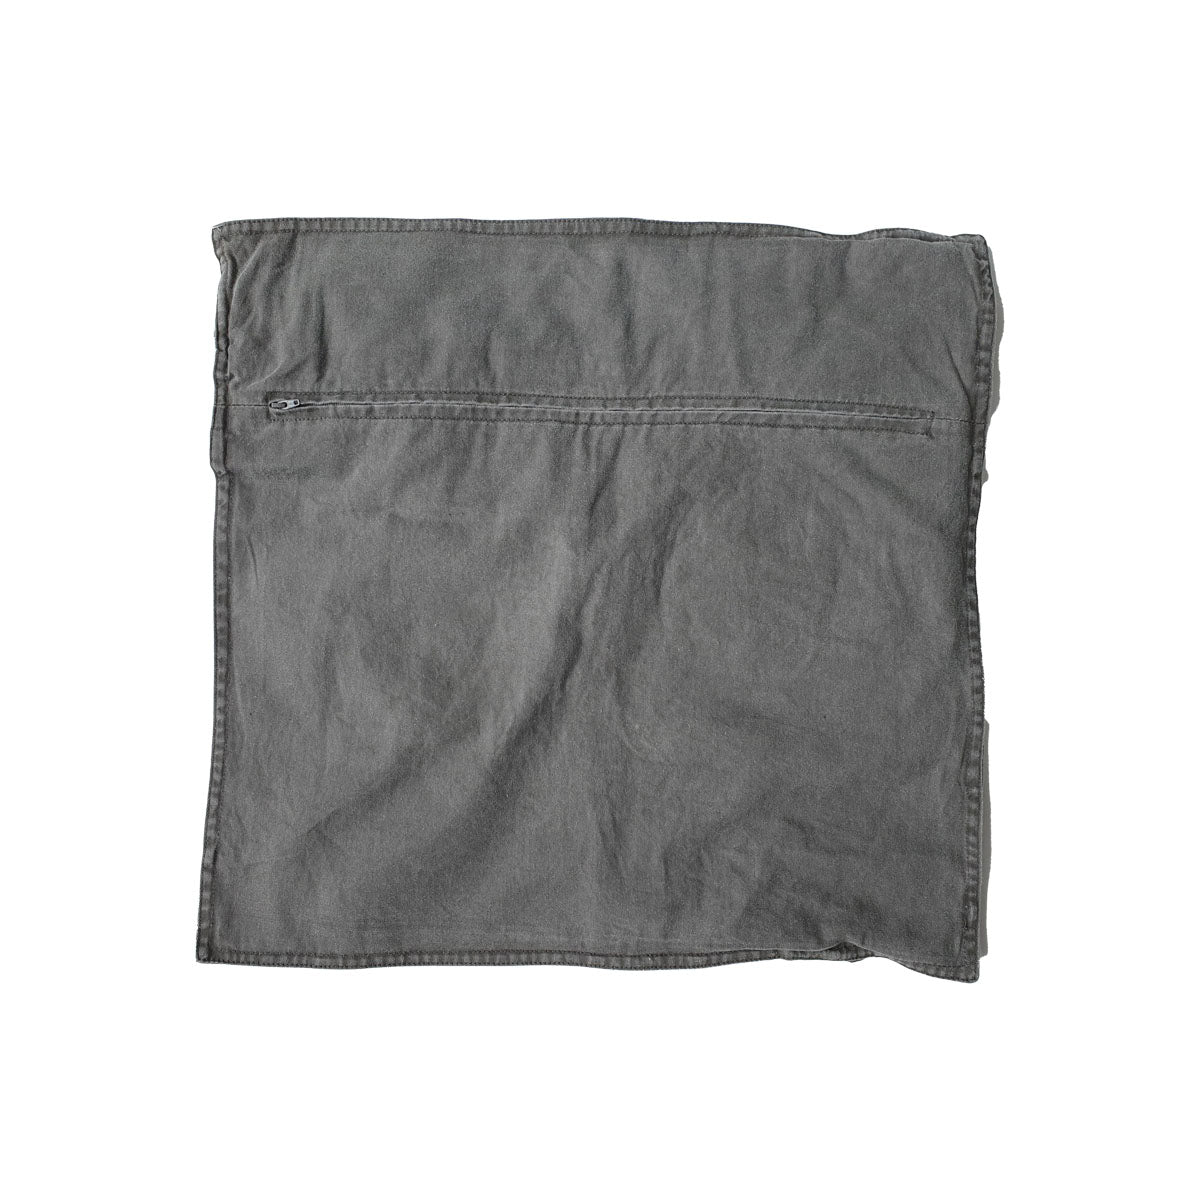 Khaki green denim cushion cover